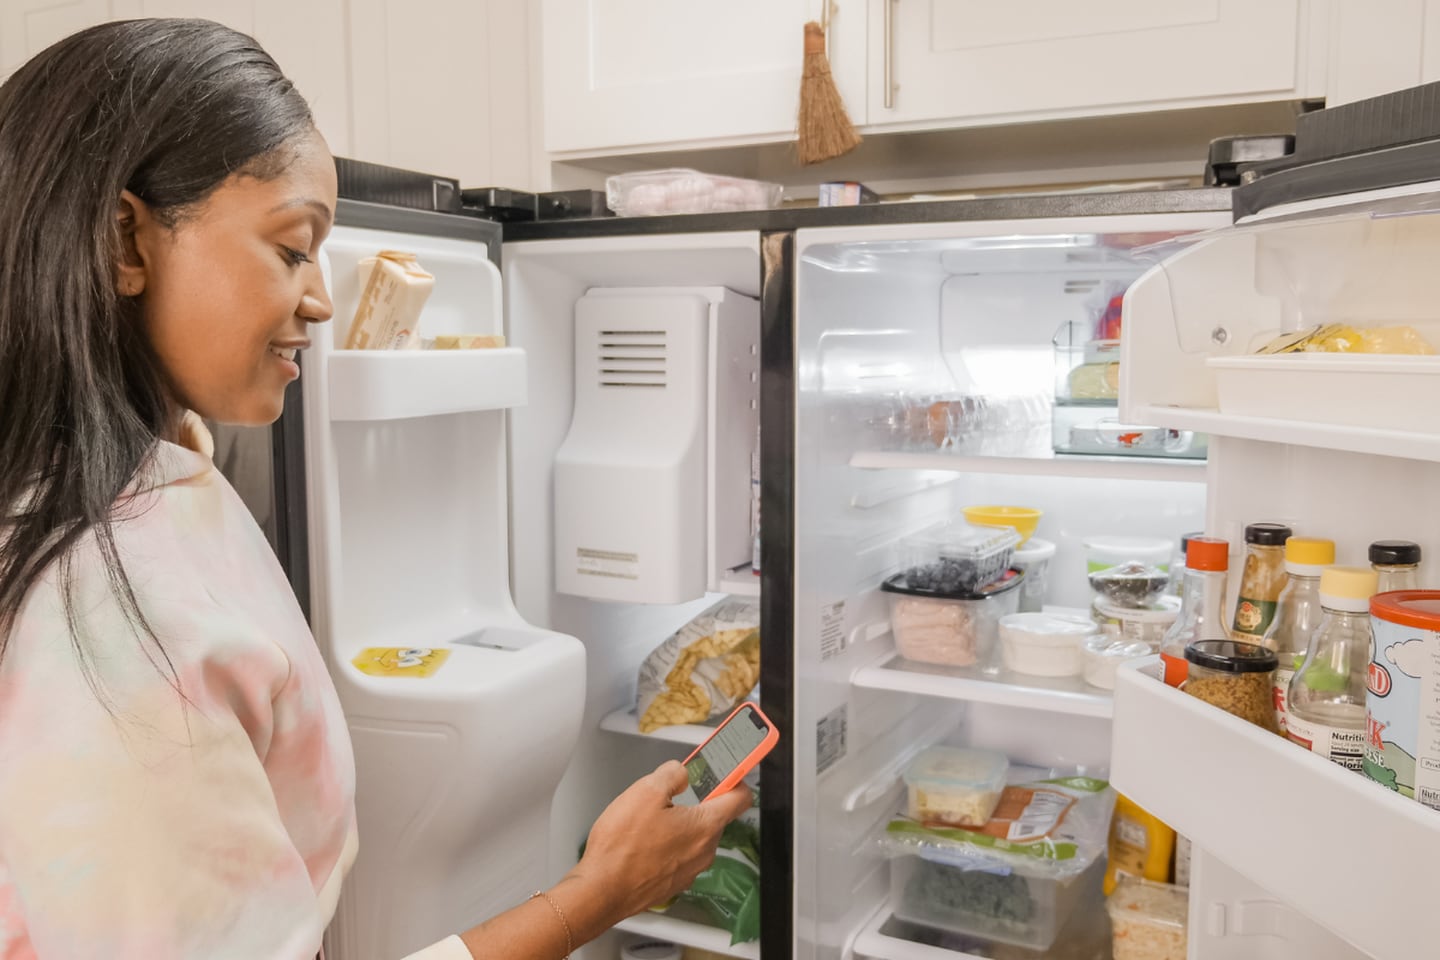 Mujer revisando su refrigerador.